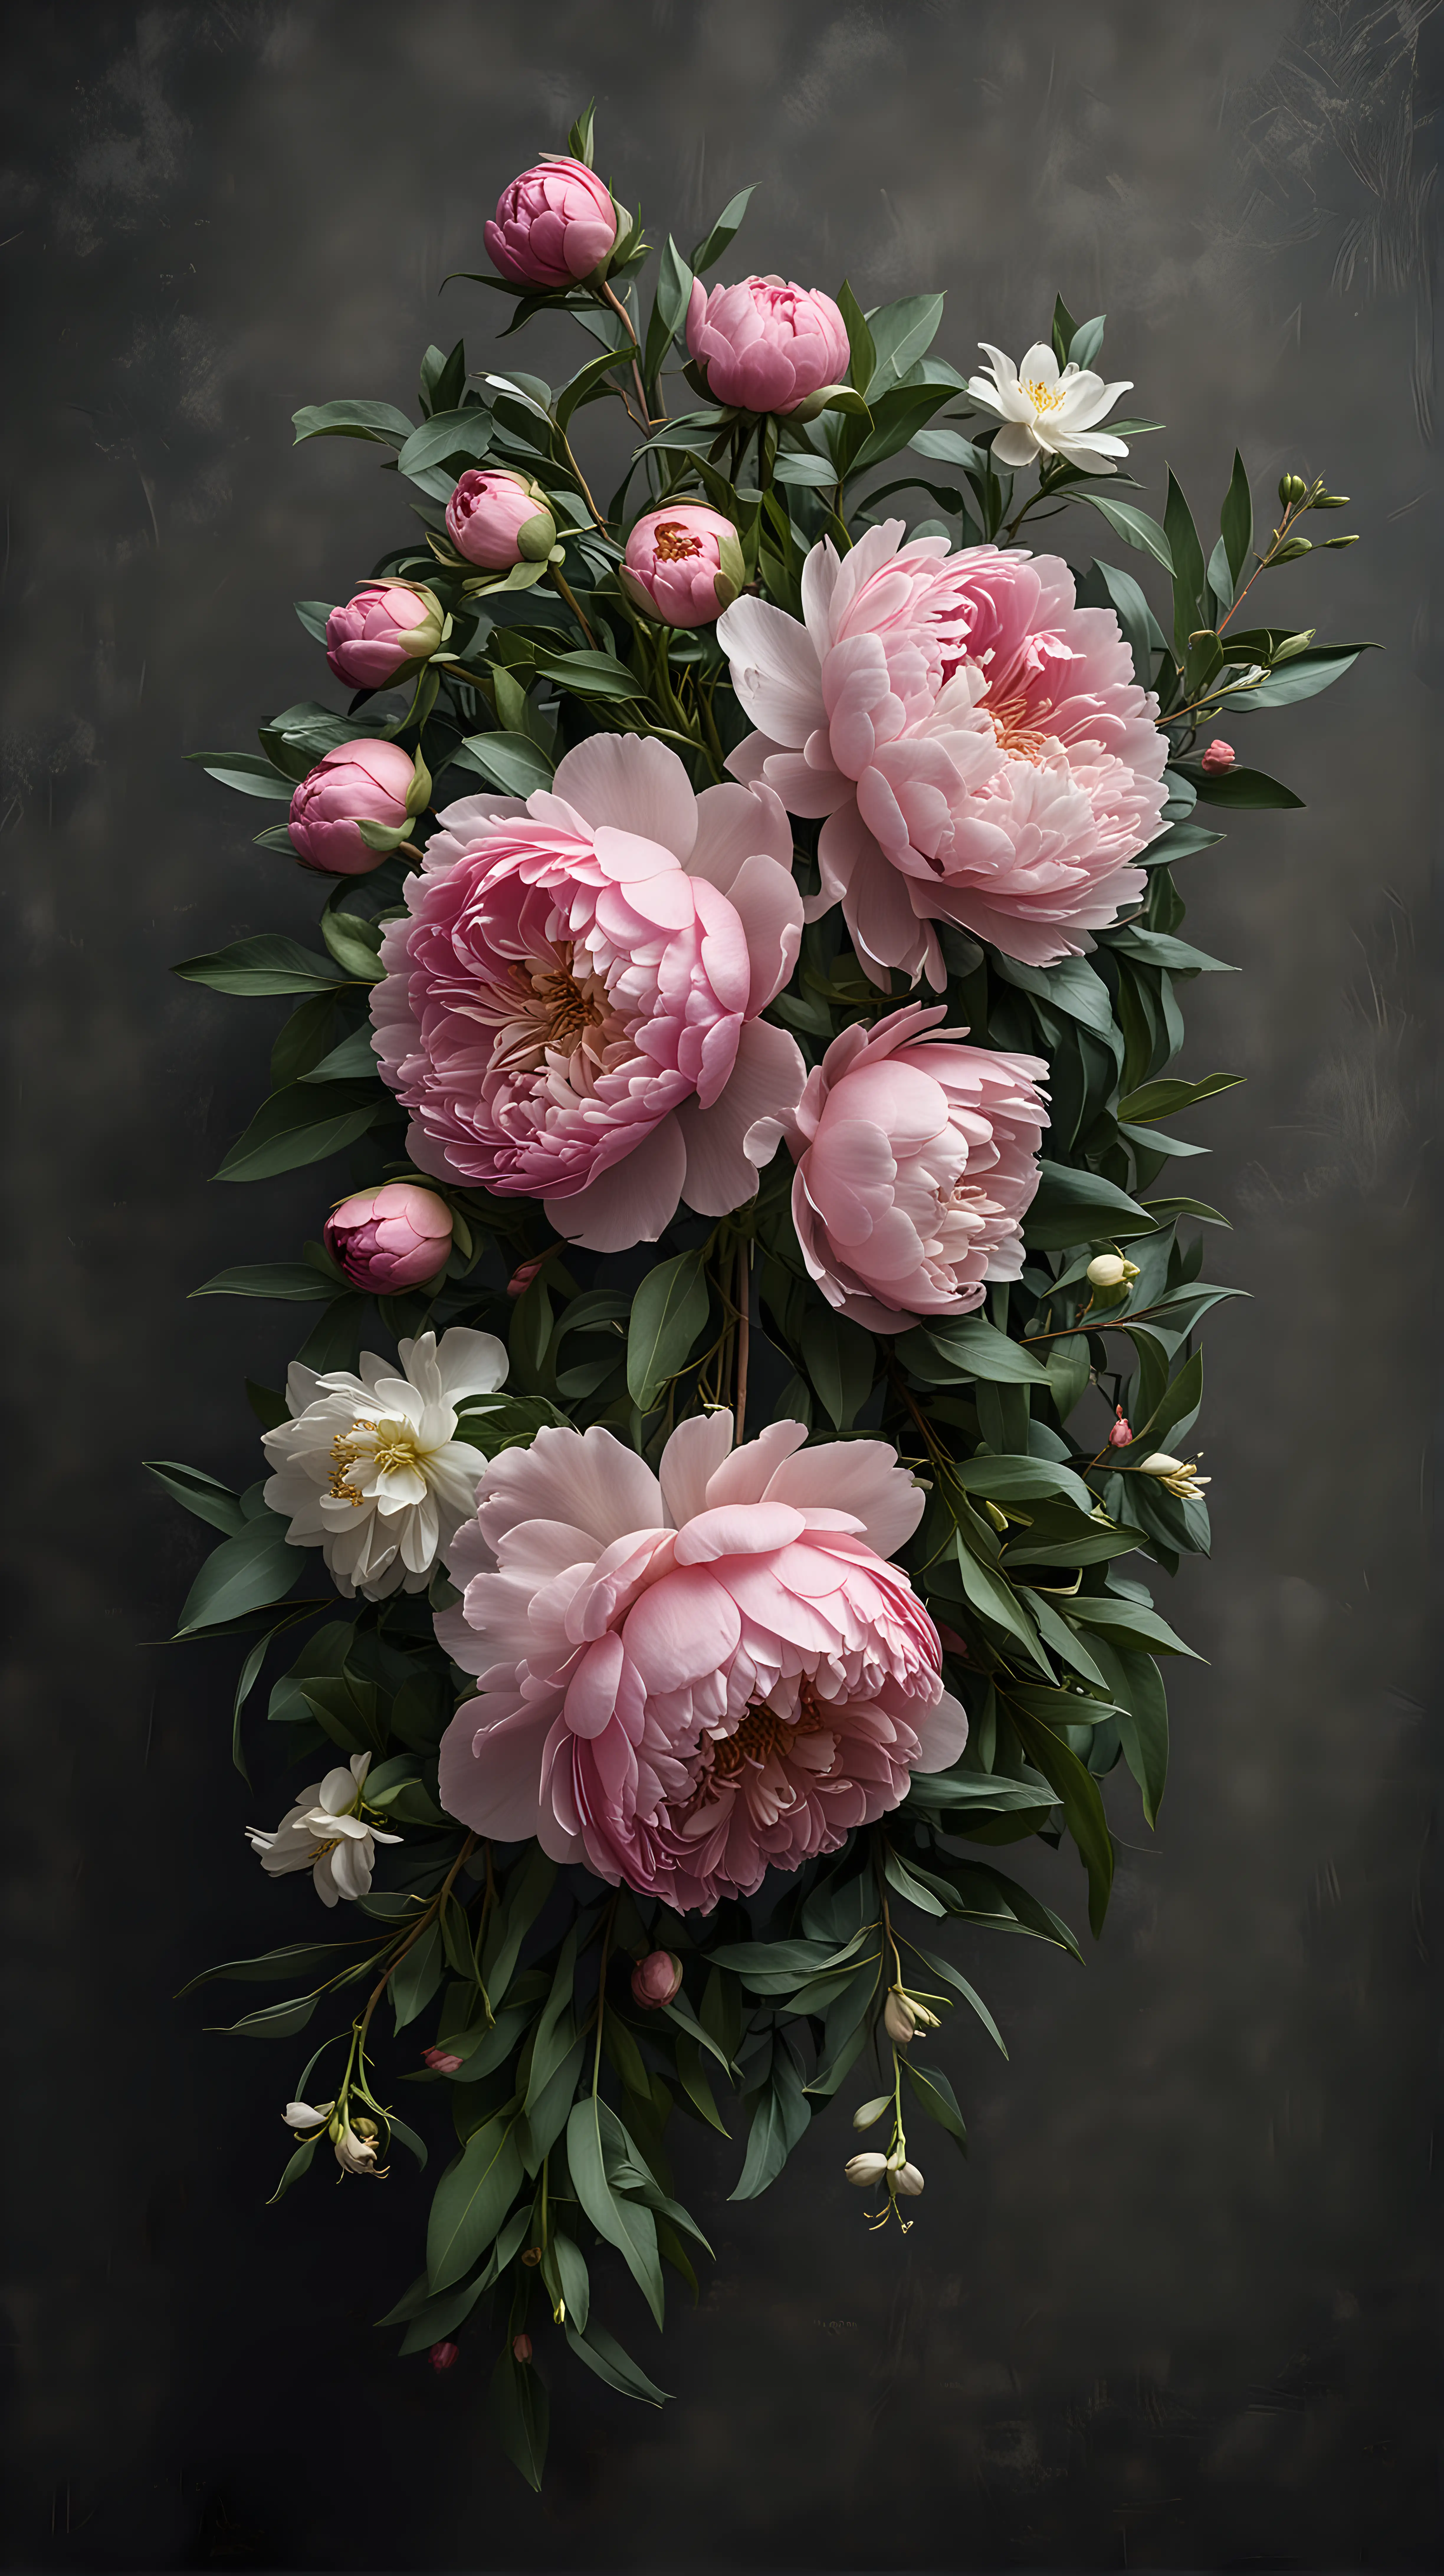 Elegant Floral Arrangement Moody Dusty Pink Peonies and Bright Renunculus on Dark Background